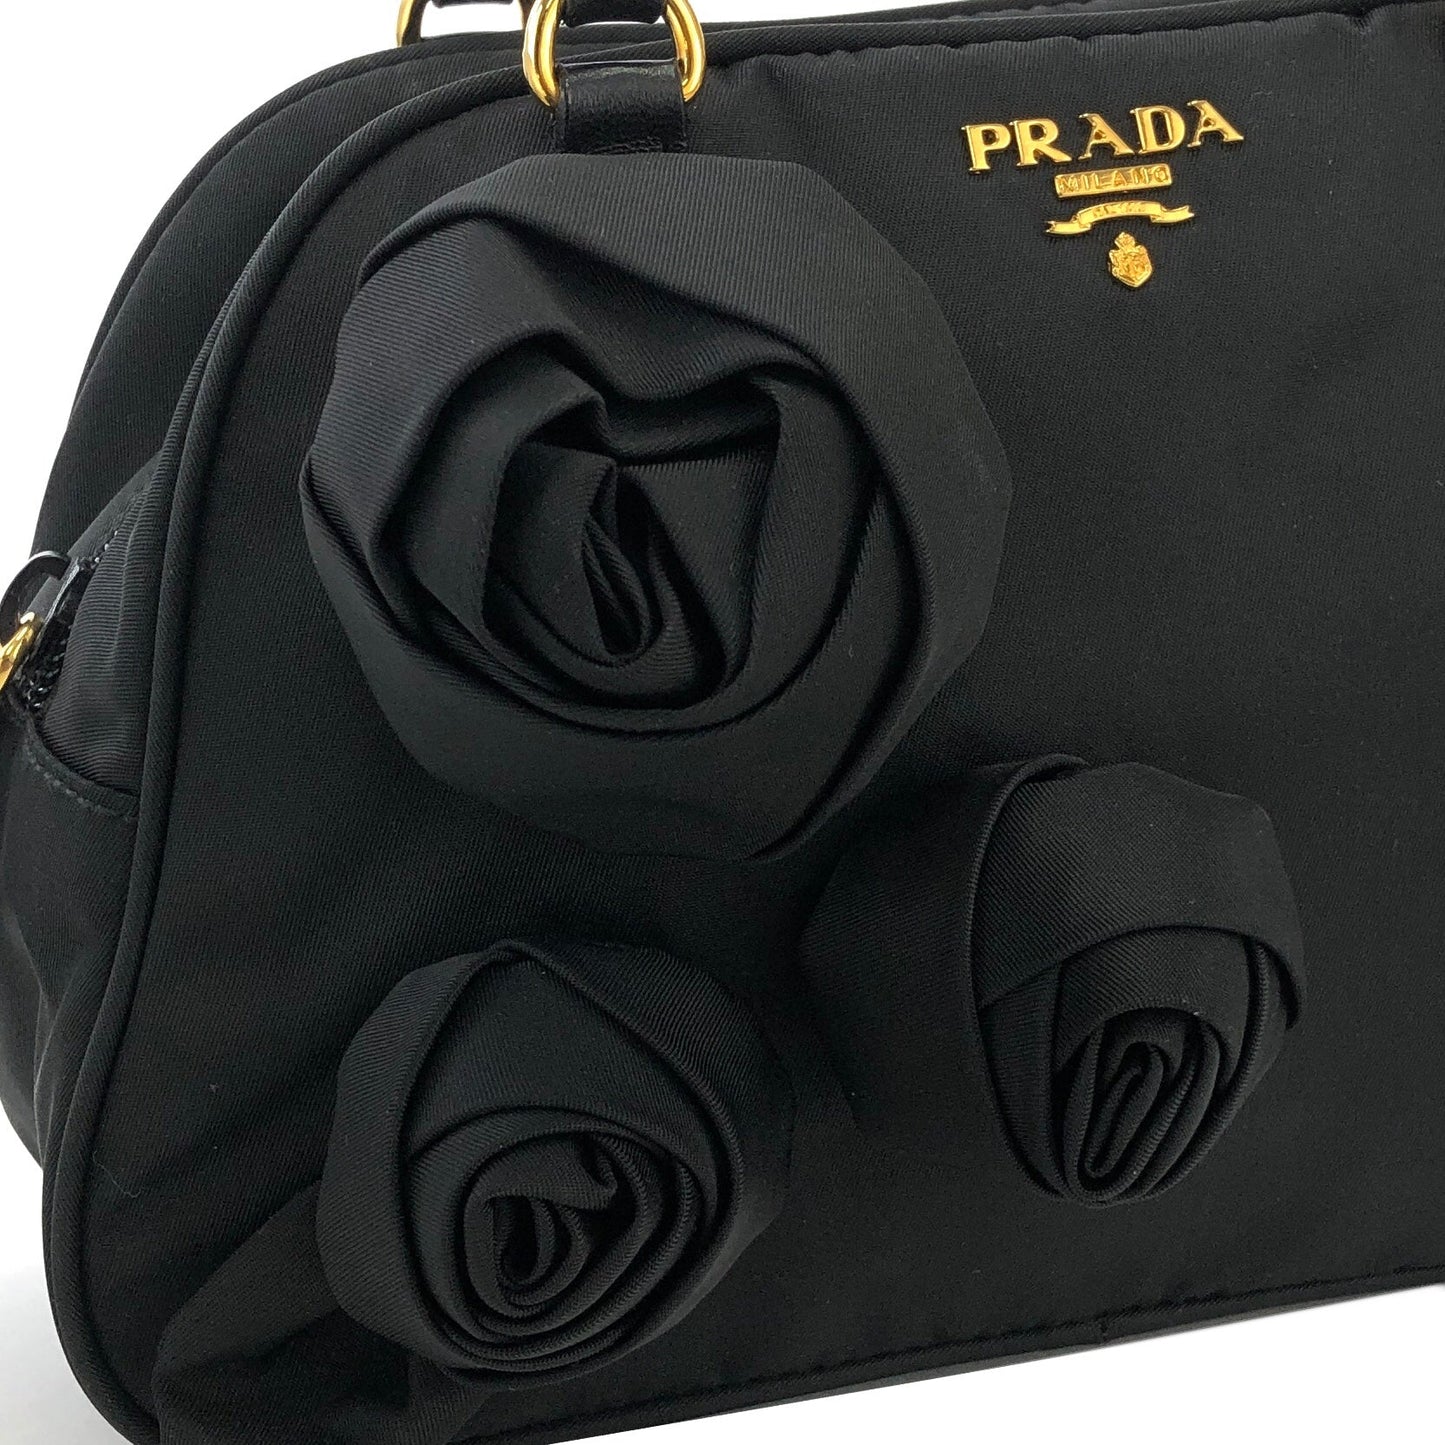 PRADA Triangle logo Nylon Corsage Small Boston bag Handbag Black Vintage n25wff